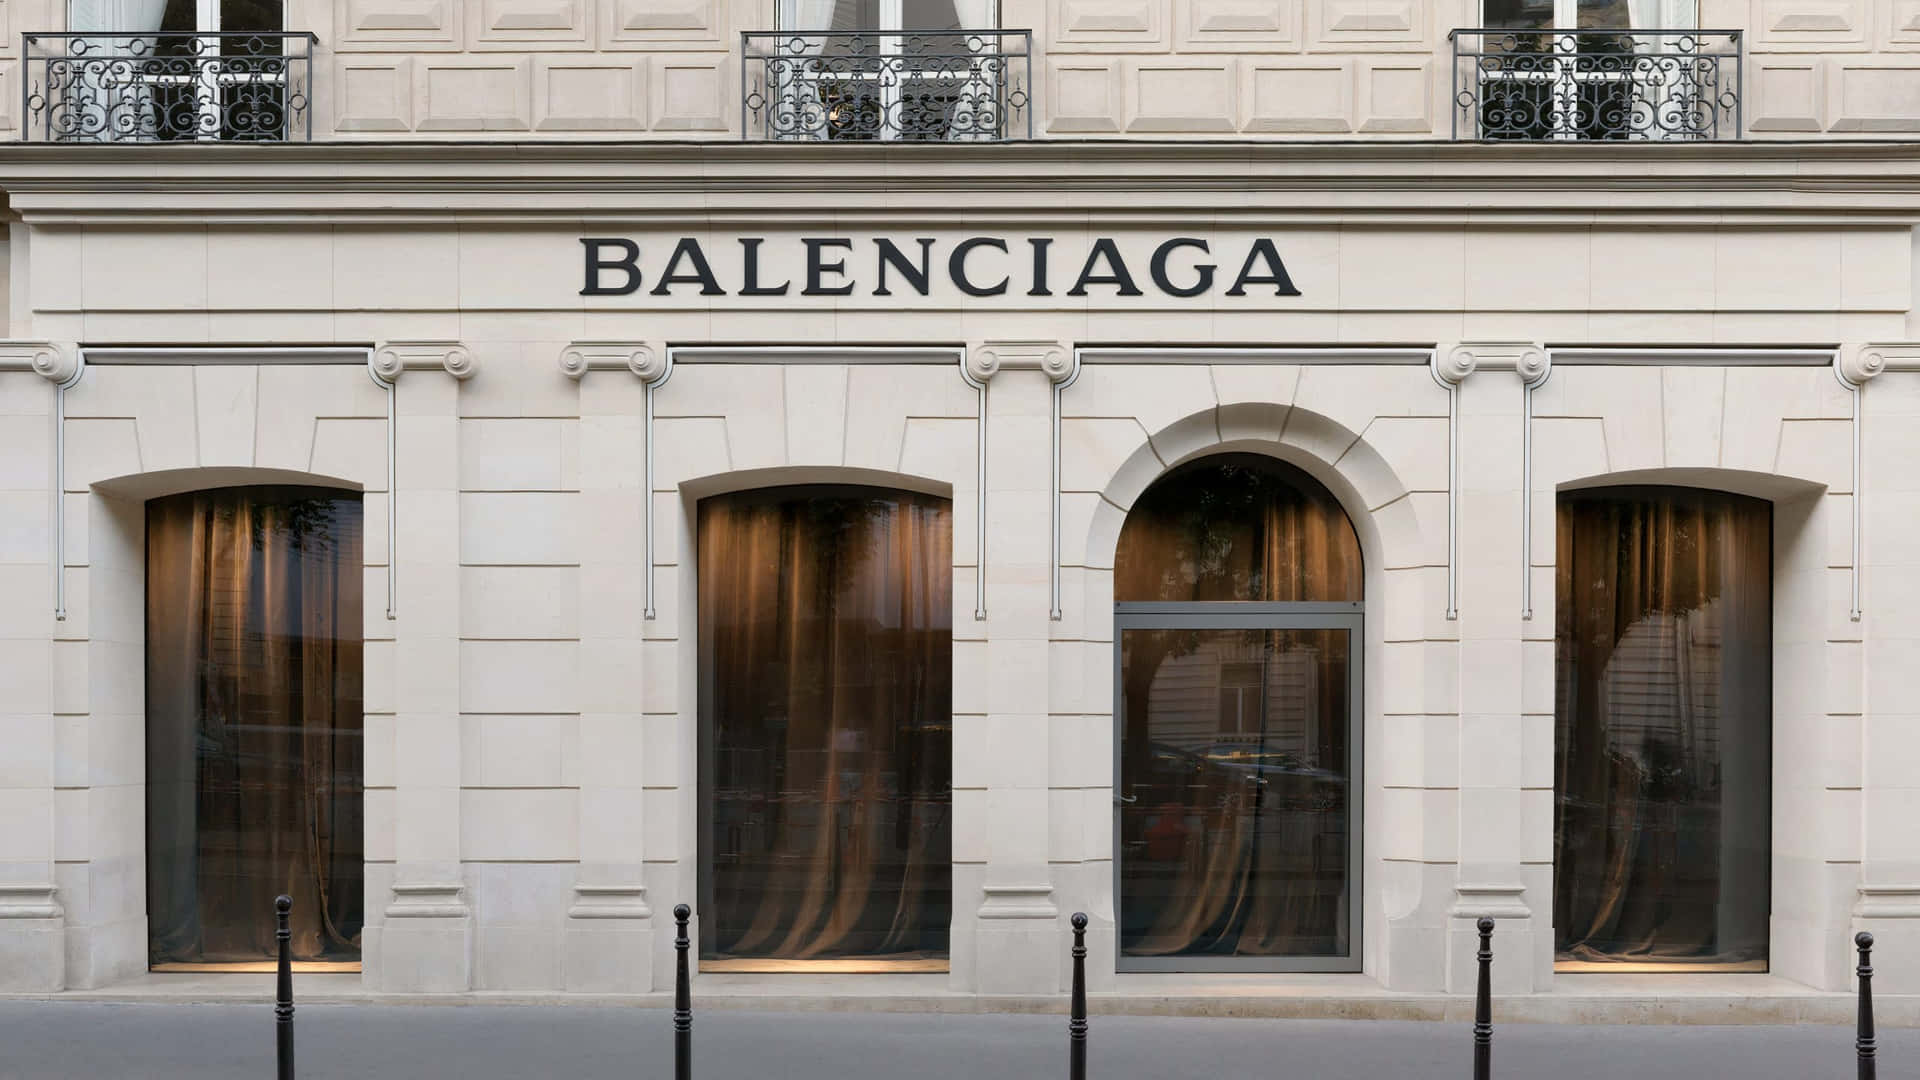 Erlebensie Den Luxus Des Lebens Mit Balenciaga